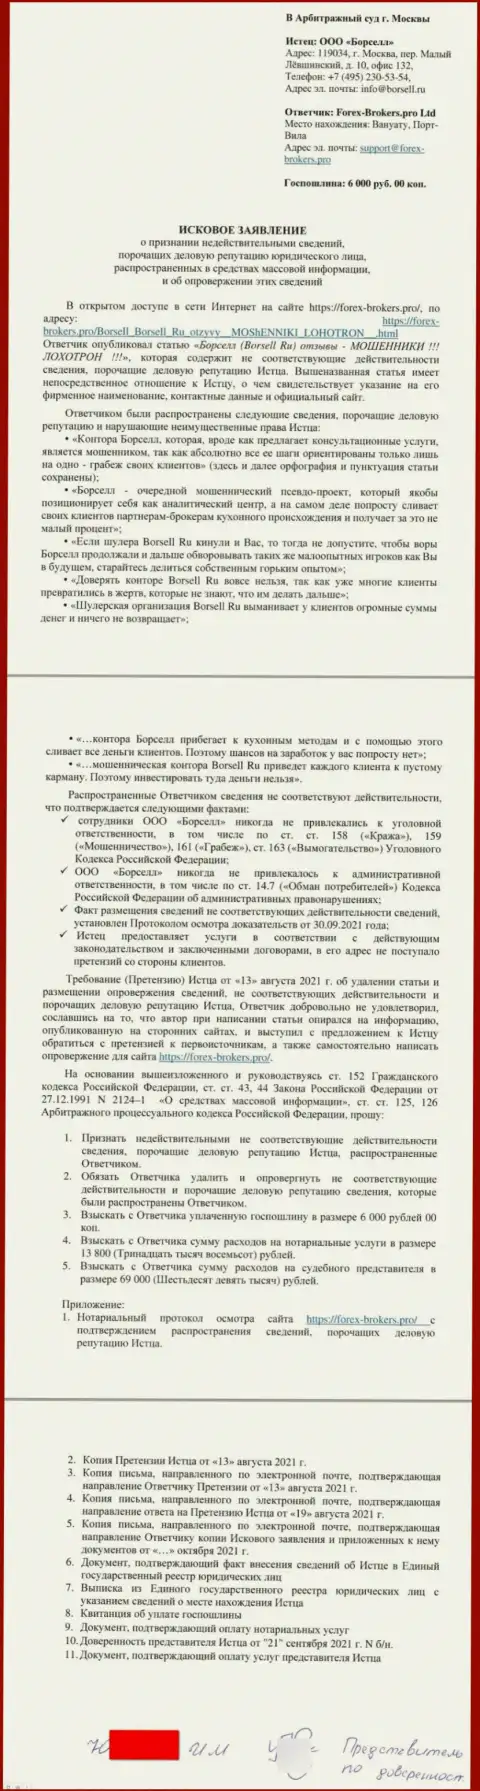 Непосредственно исковое заявление в суд от некого представителя организации Borsell Ru